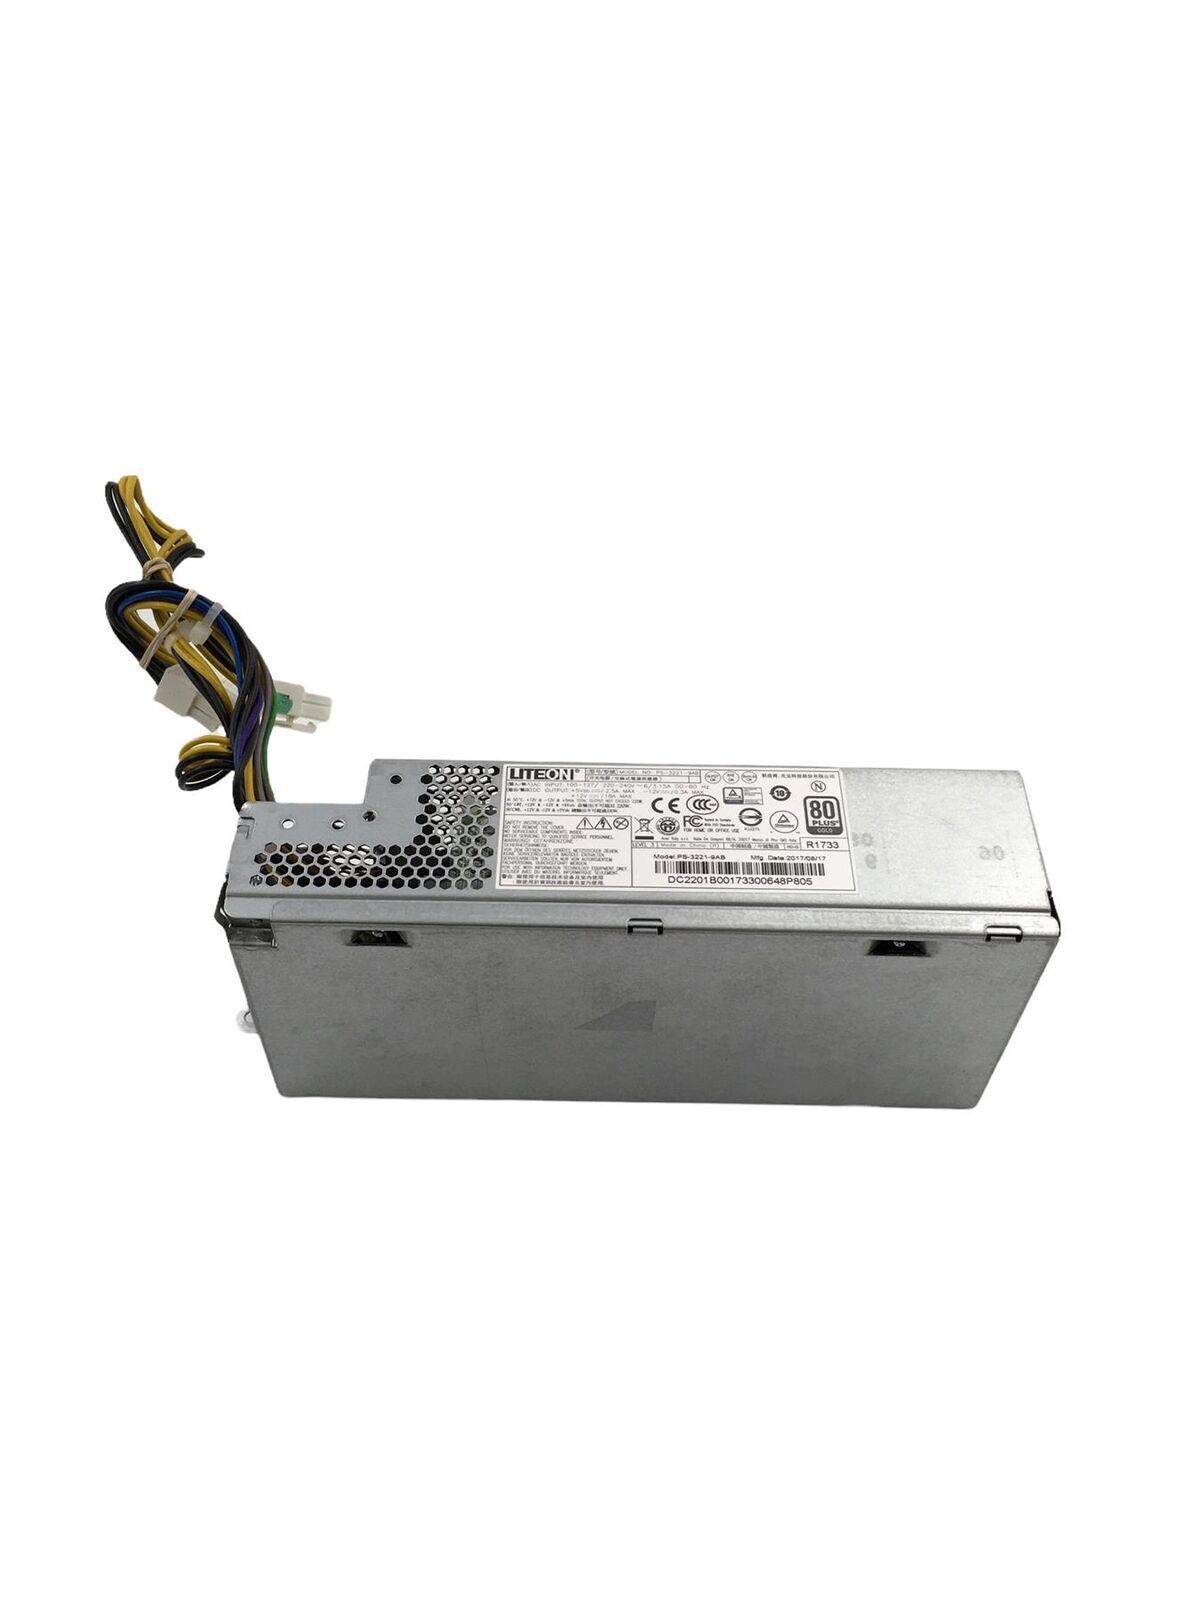 Acer PS-3221-9AB Power Supply X4640 X4640G X6630 X6630G X6640 X6640G FSP220-30FABA 9PA2202500